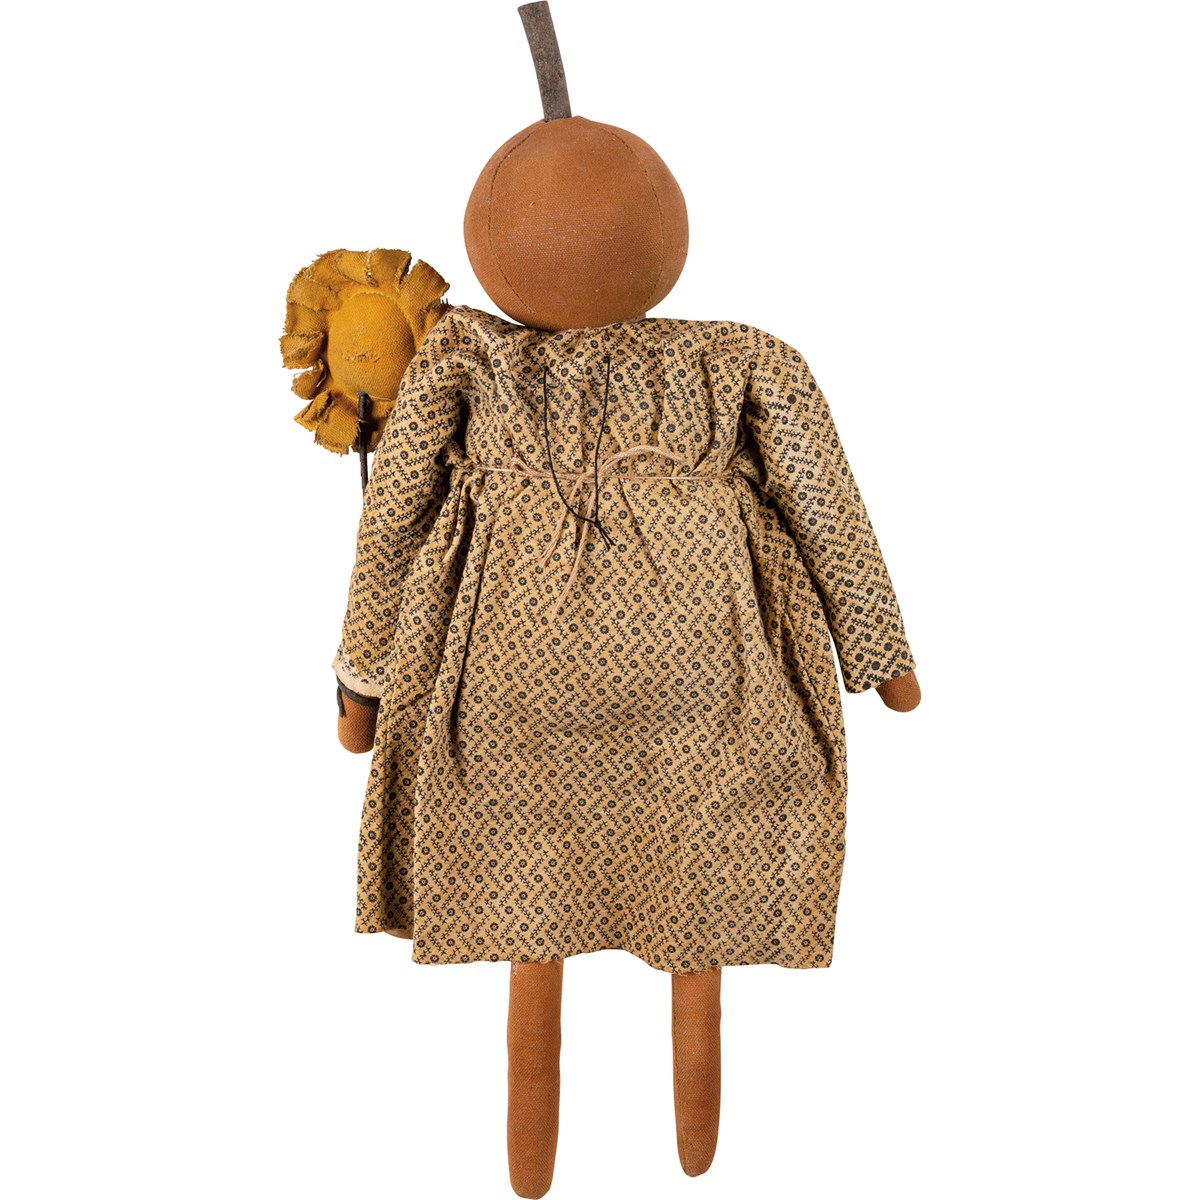 Sunflower Susie Doll - Cotton, Wood, Wire, Plastic